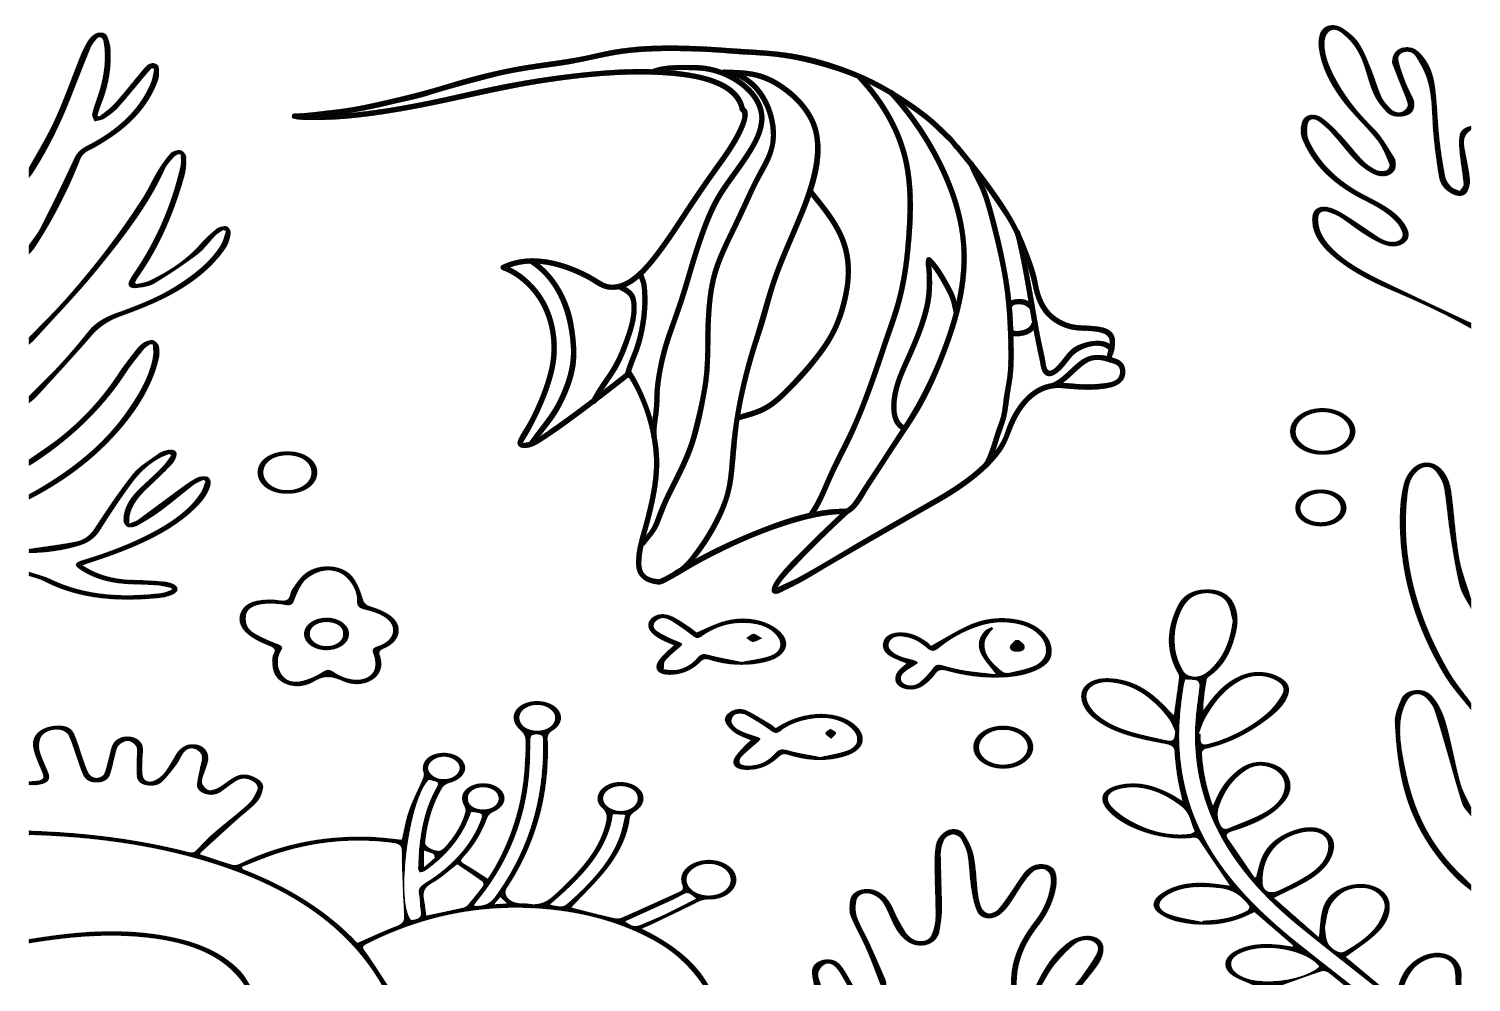 Pennant Coralfish für Kinder von Pennant Coralfish